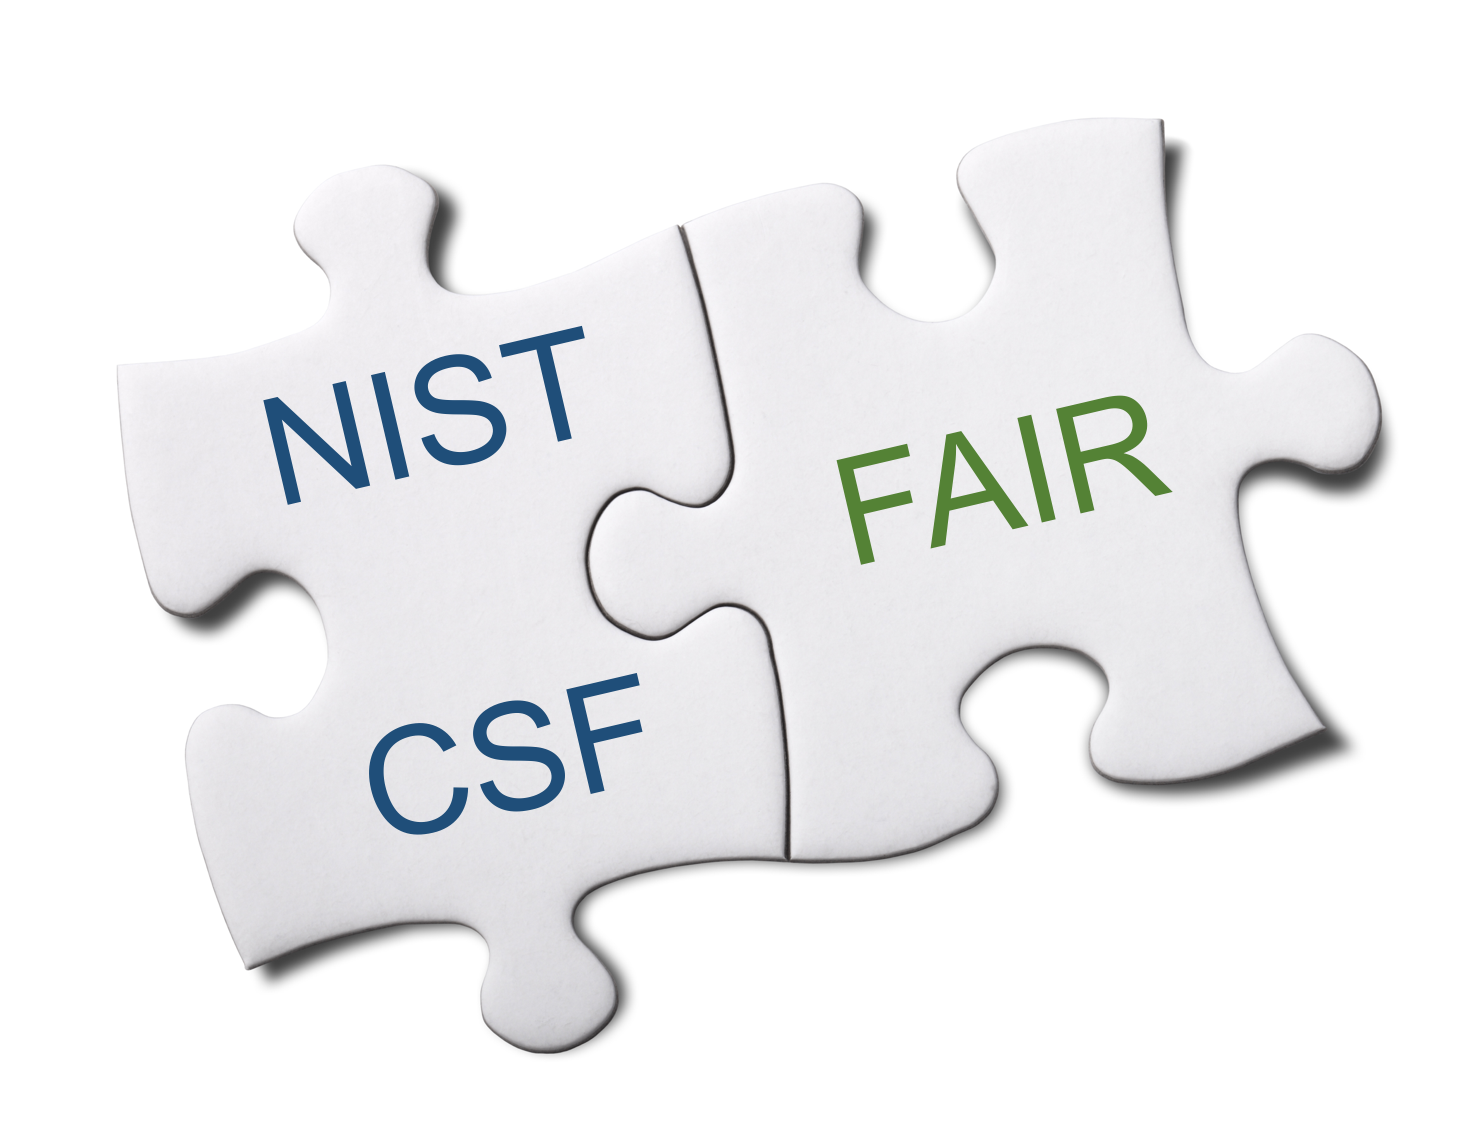 NIST CSF & FAIR - Part 4